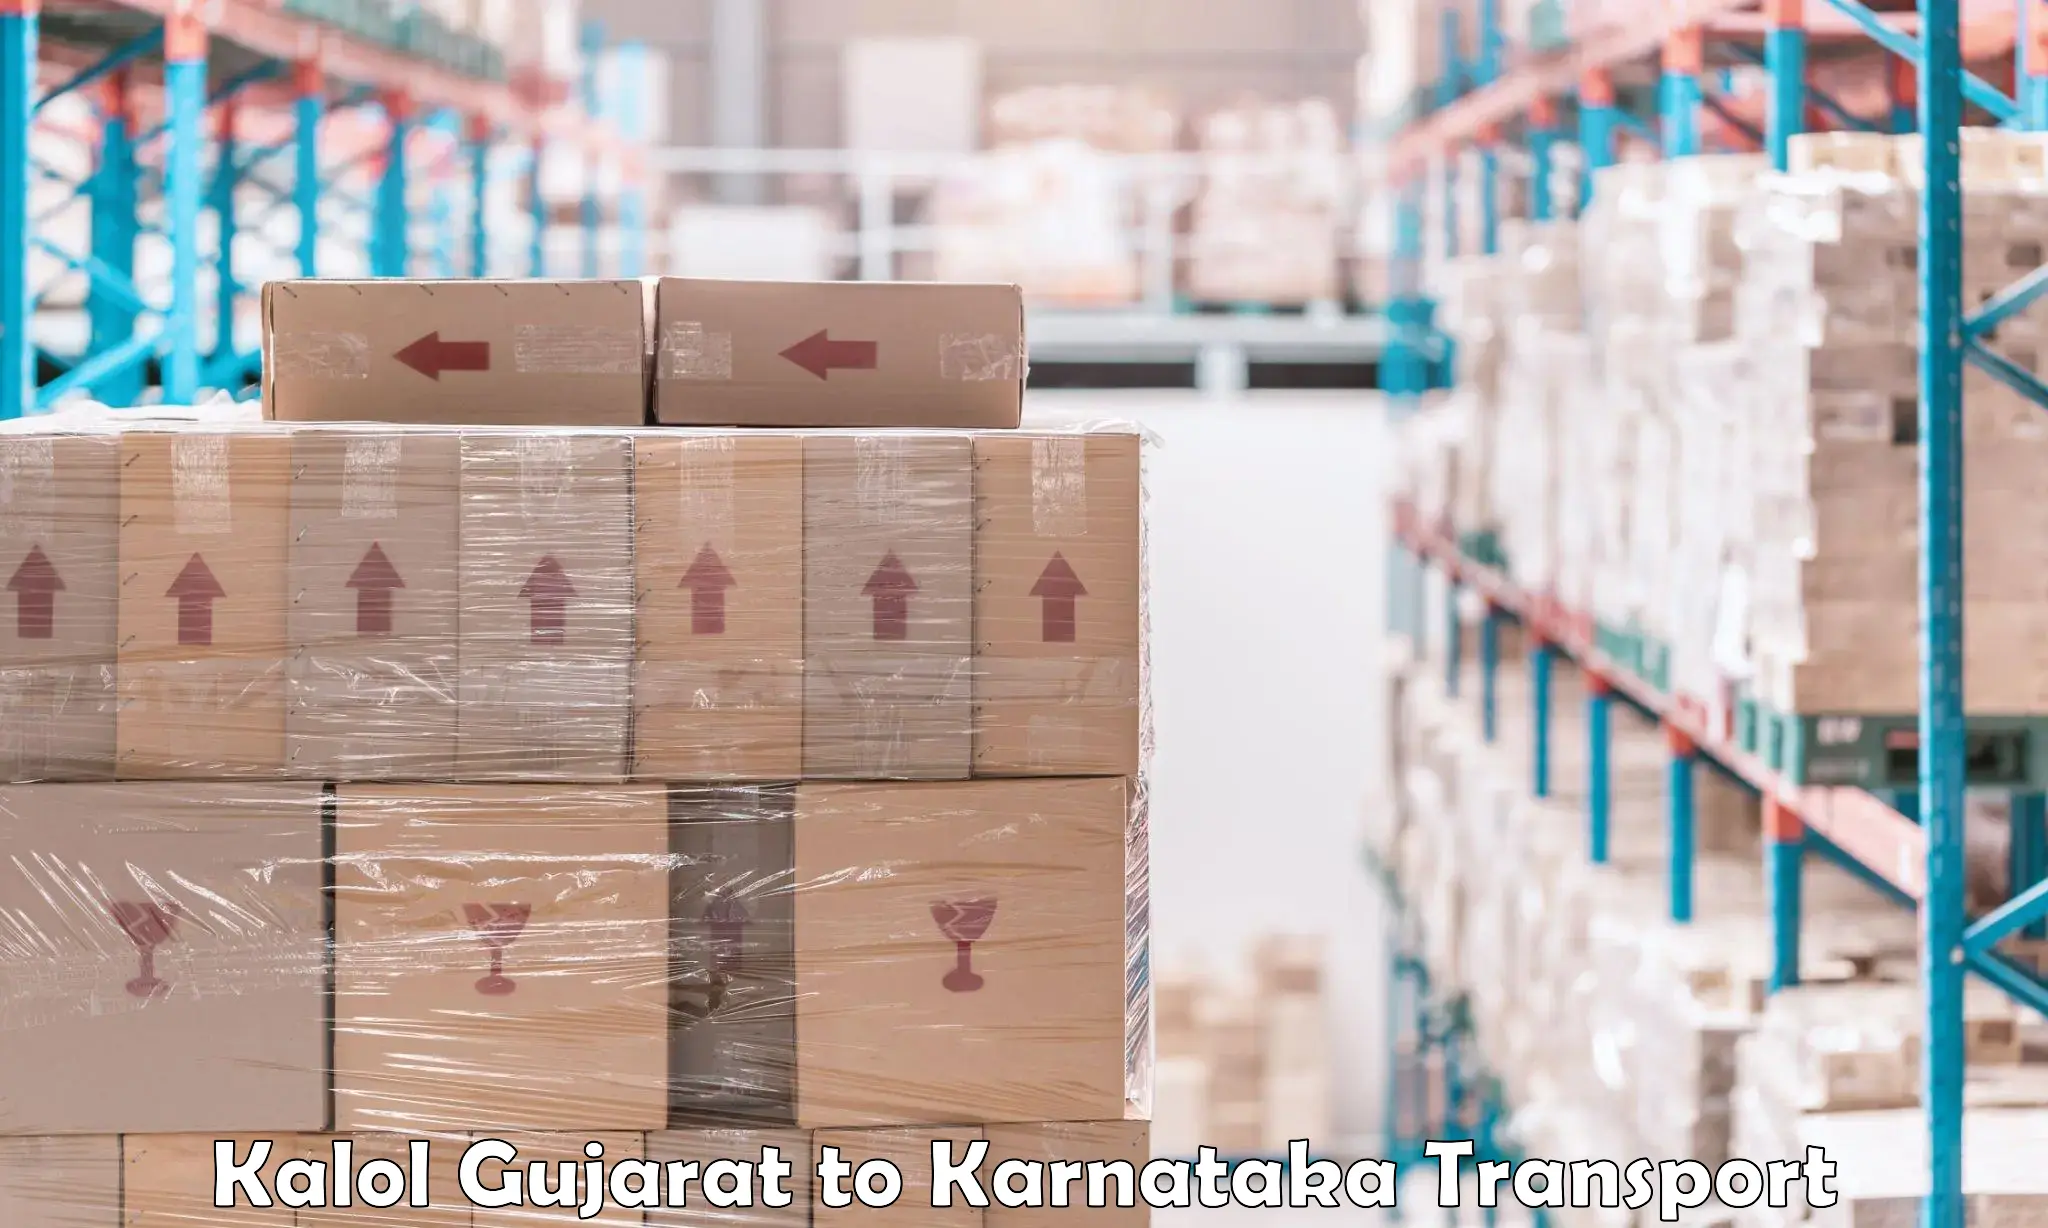 Luggage transport services Kalol Gujarat to Yellare